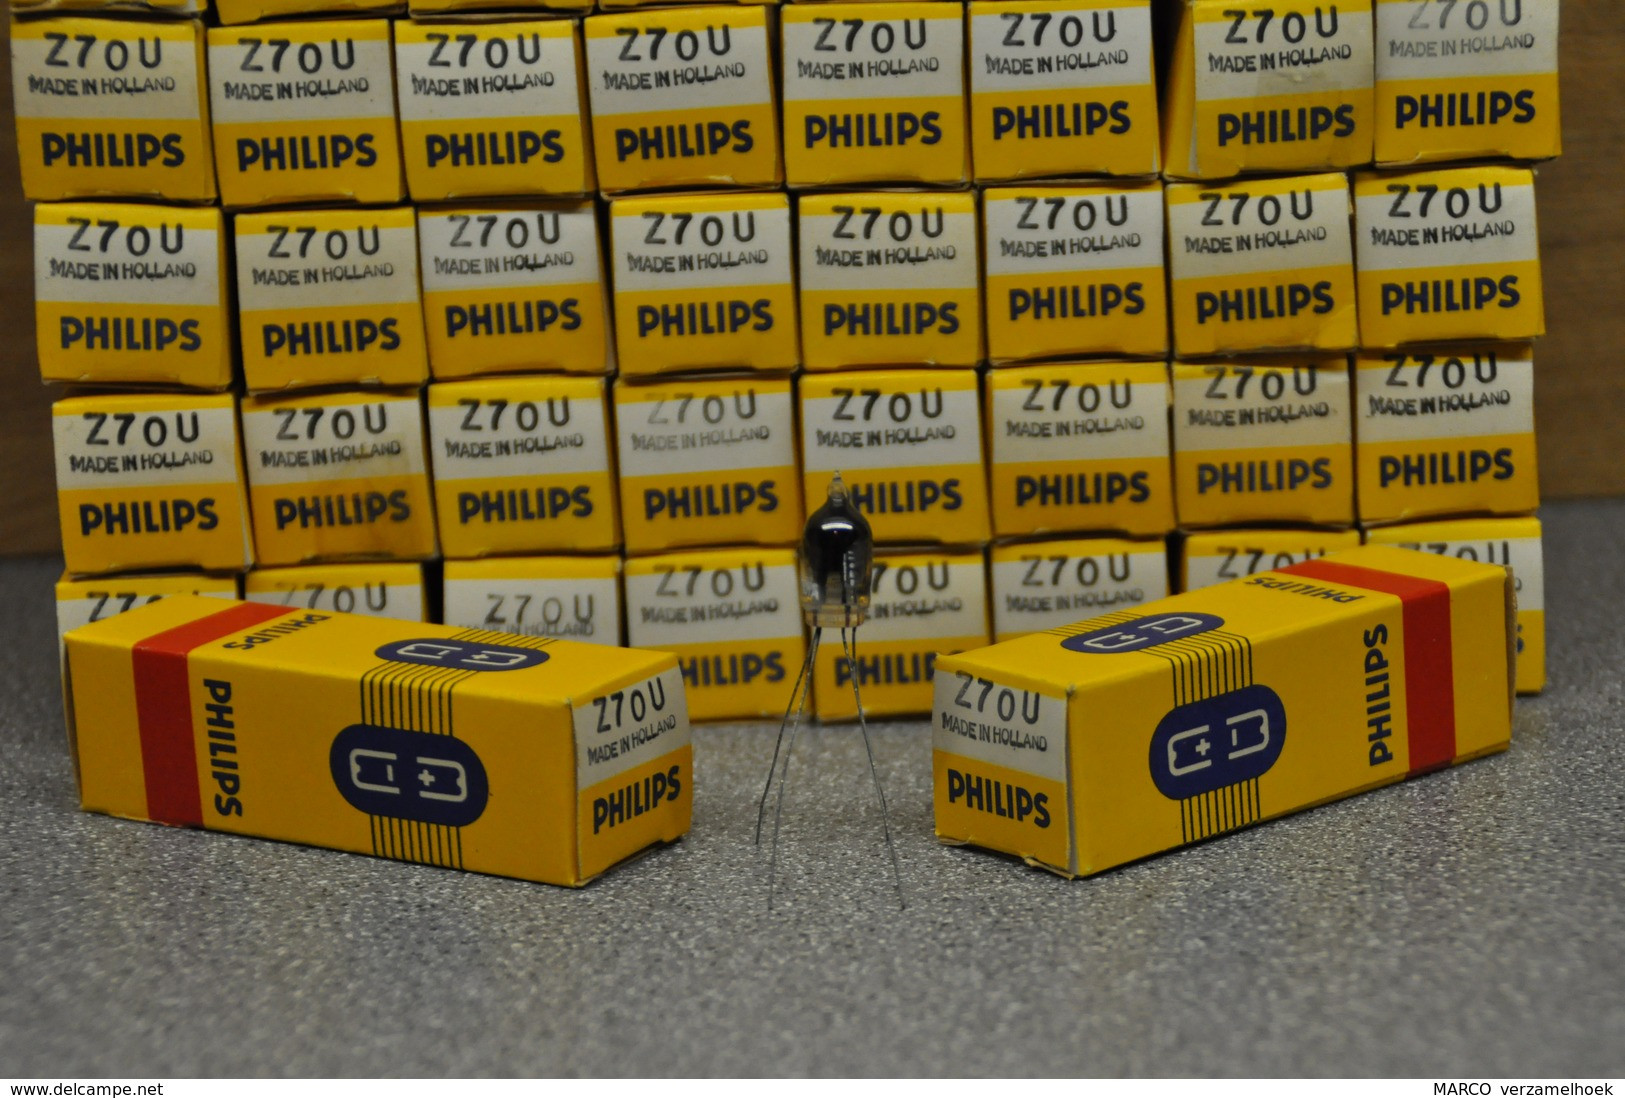 Philips Buis-röhre-tube Z70U - (7710 - GR43) Thyratron Tube New (jukebox) Neonbuisje Glimmröhre - Vacuum Tubes